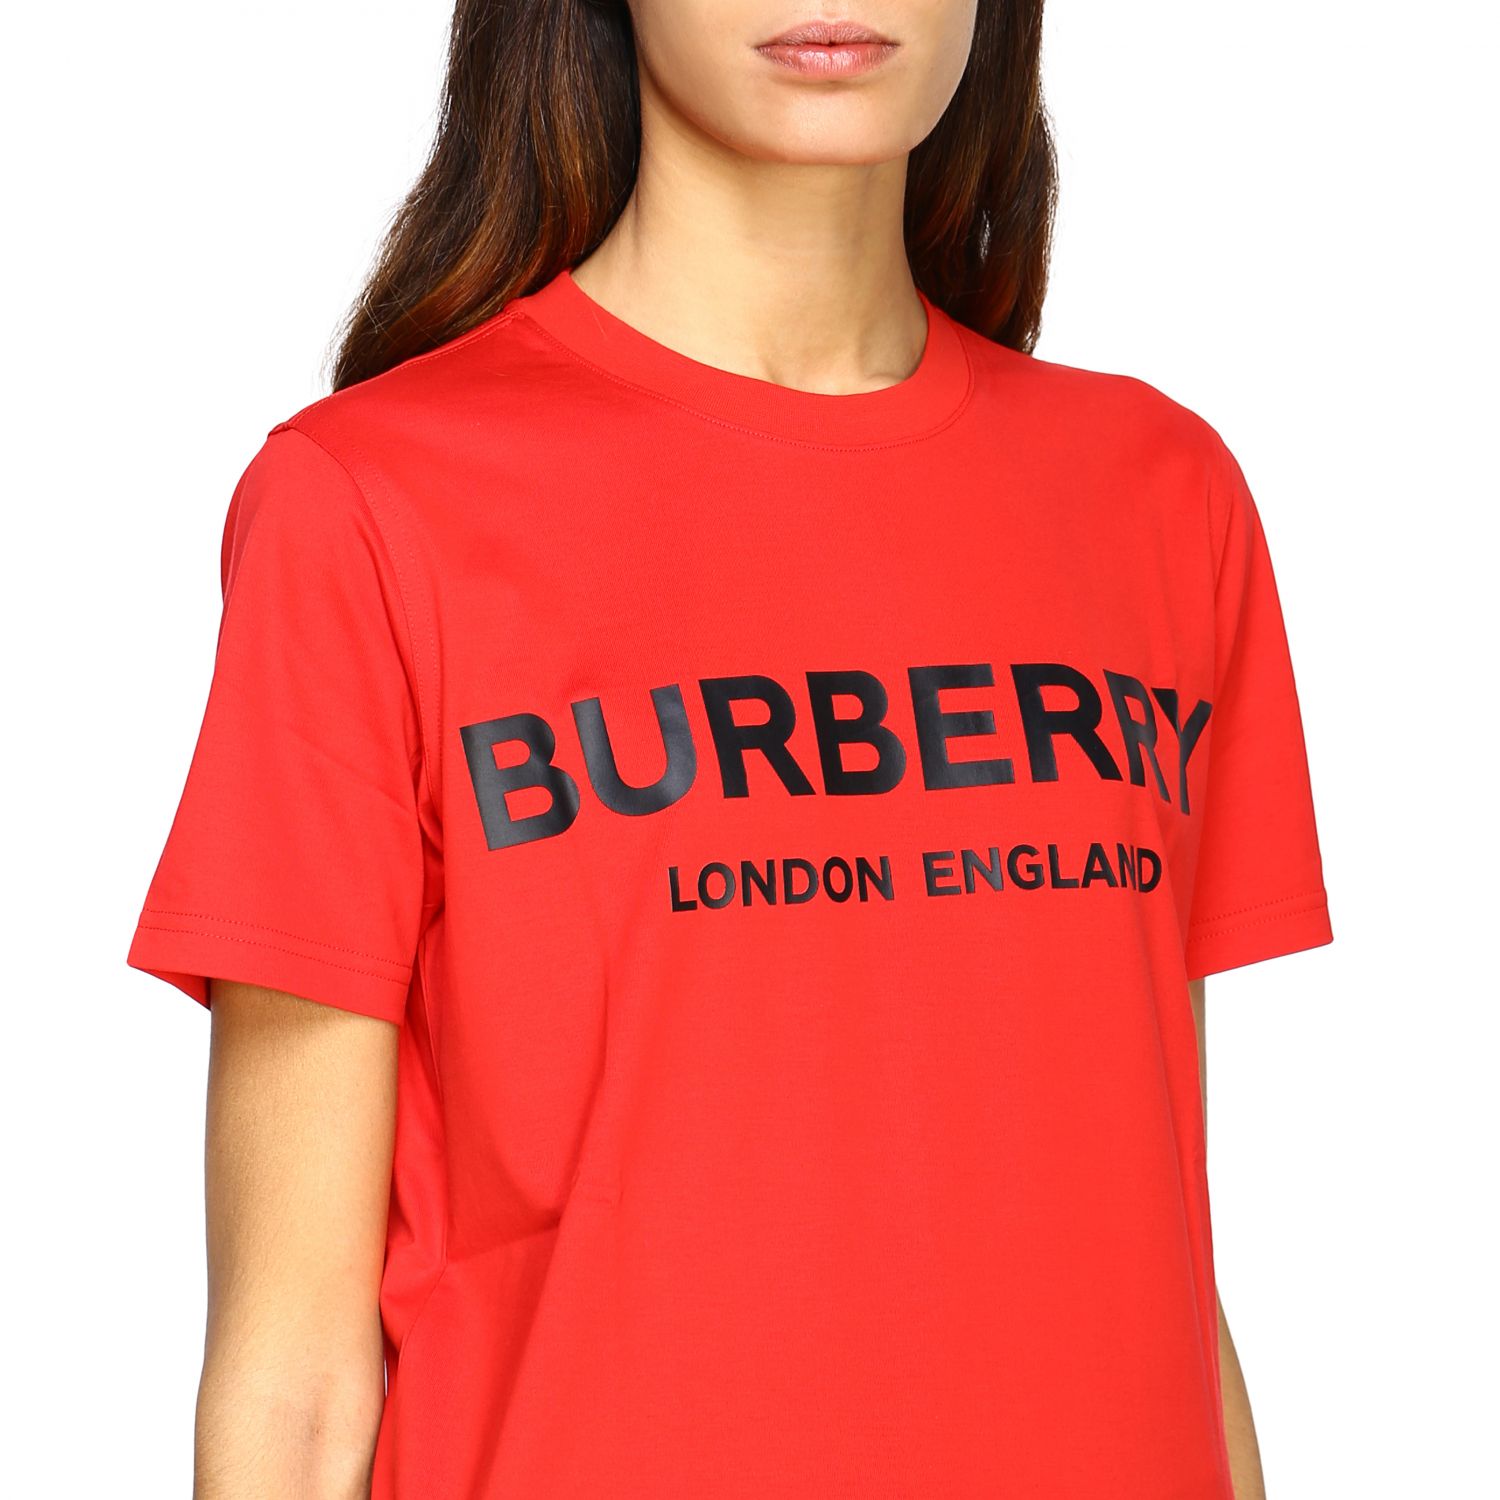 red burberry shirt women's